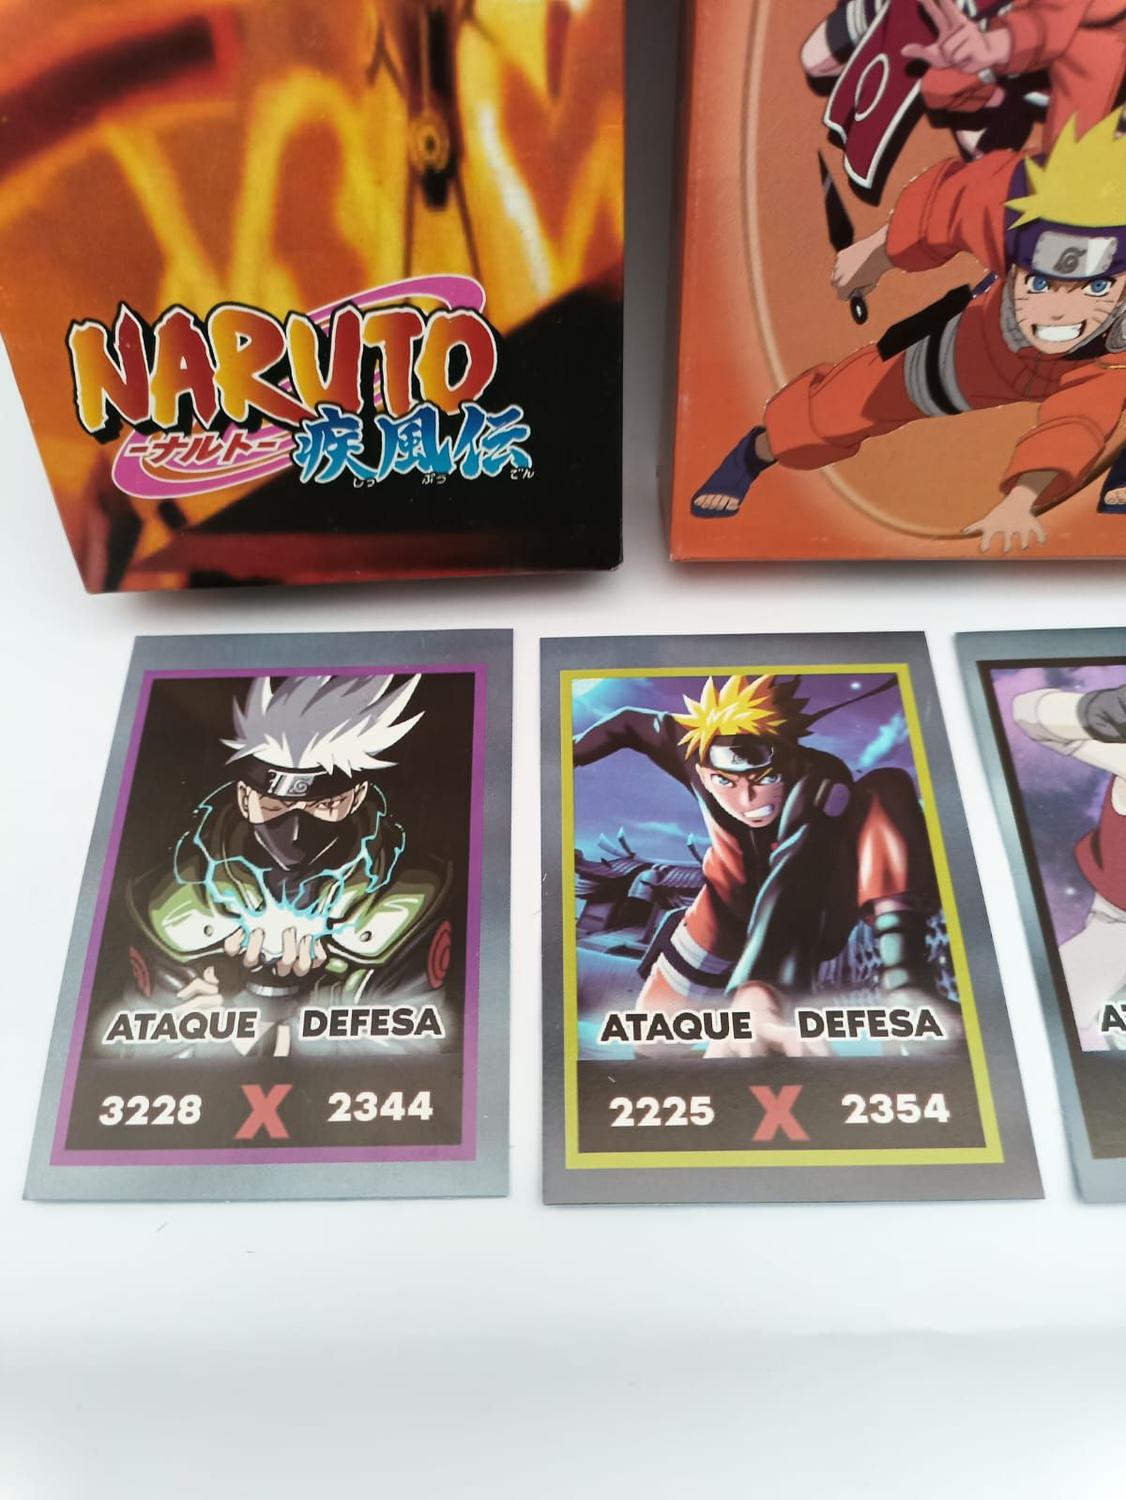 Box 08 Naruto 5 Discos - Volumes 36,37,38,39 & 40 - PlayArte - Elite Games  - Compre na melhor loja de games - Elite Games